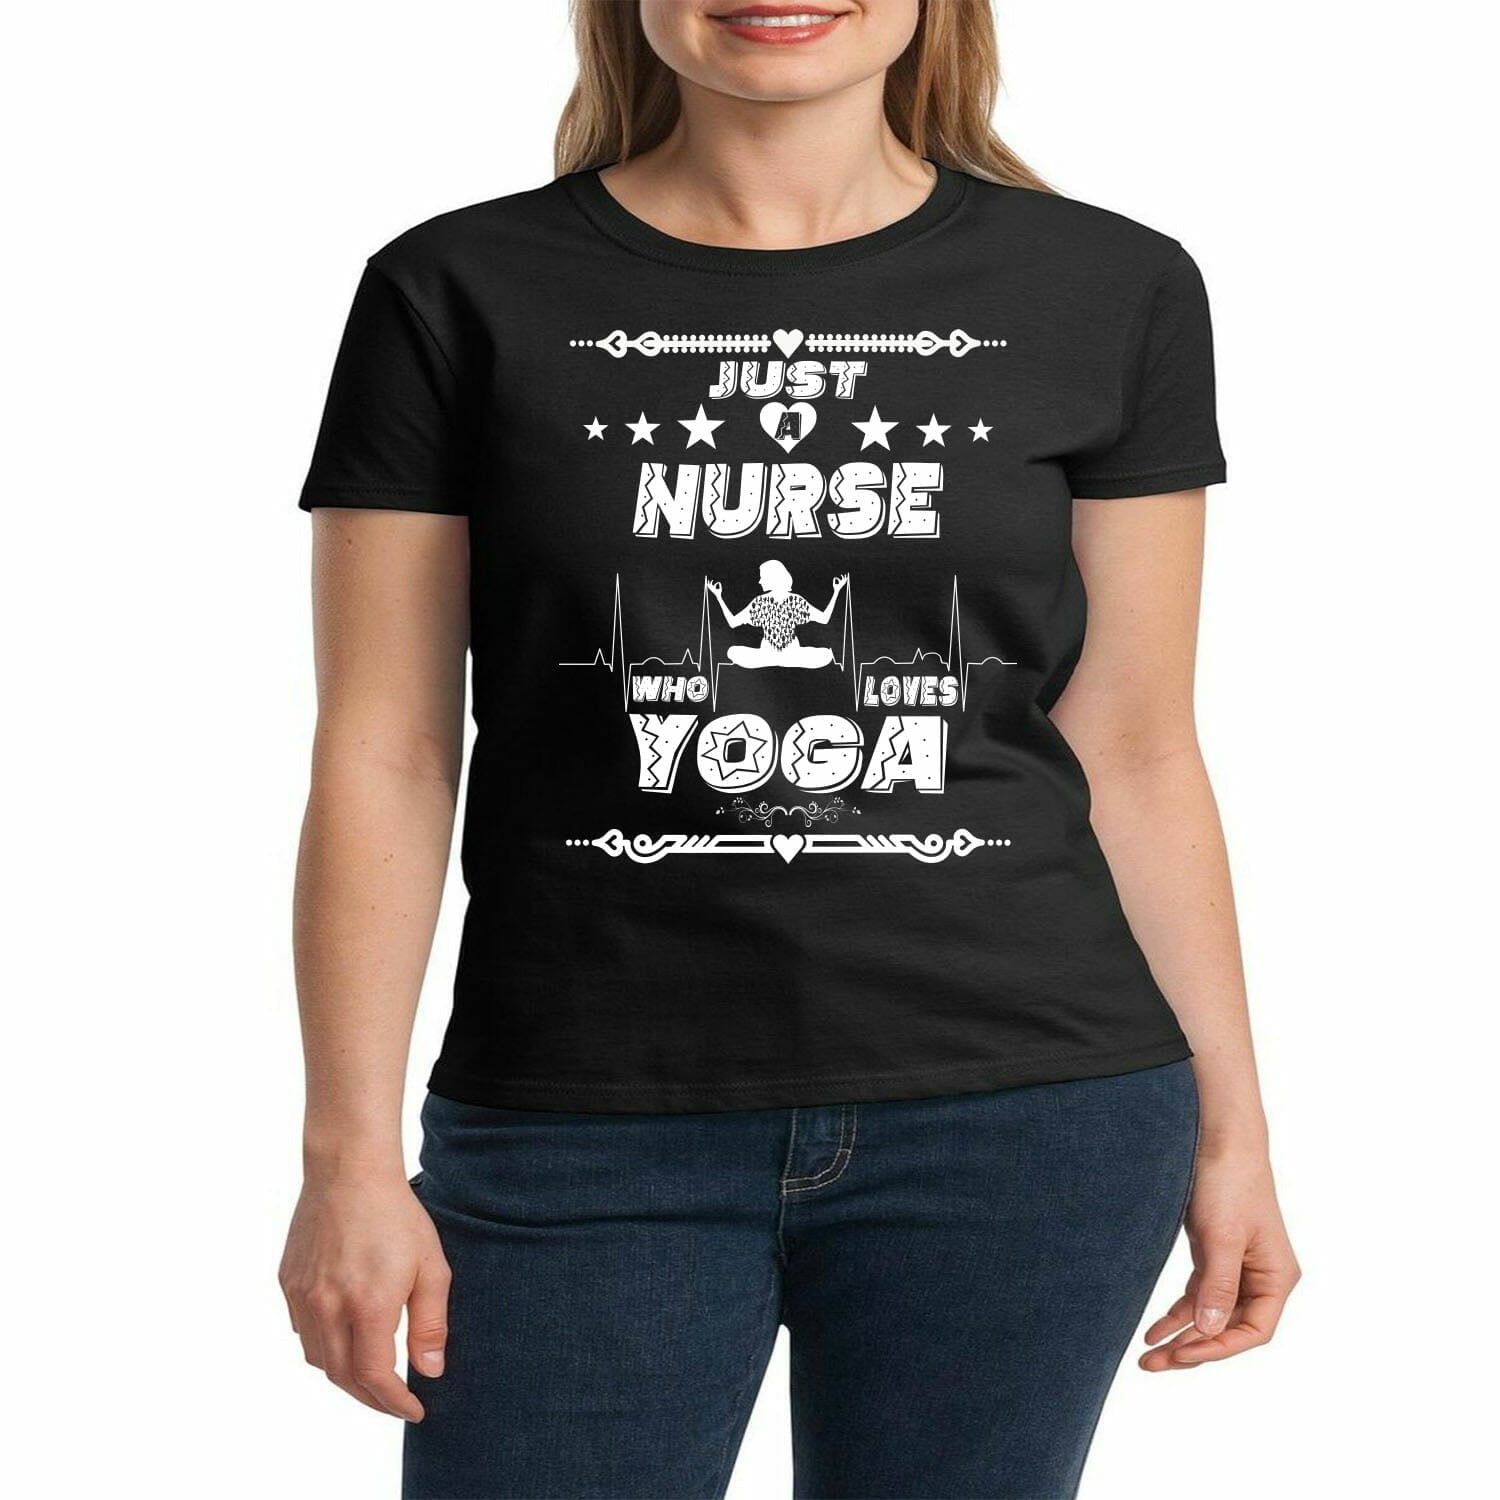 Nurse who loves yoga